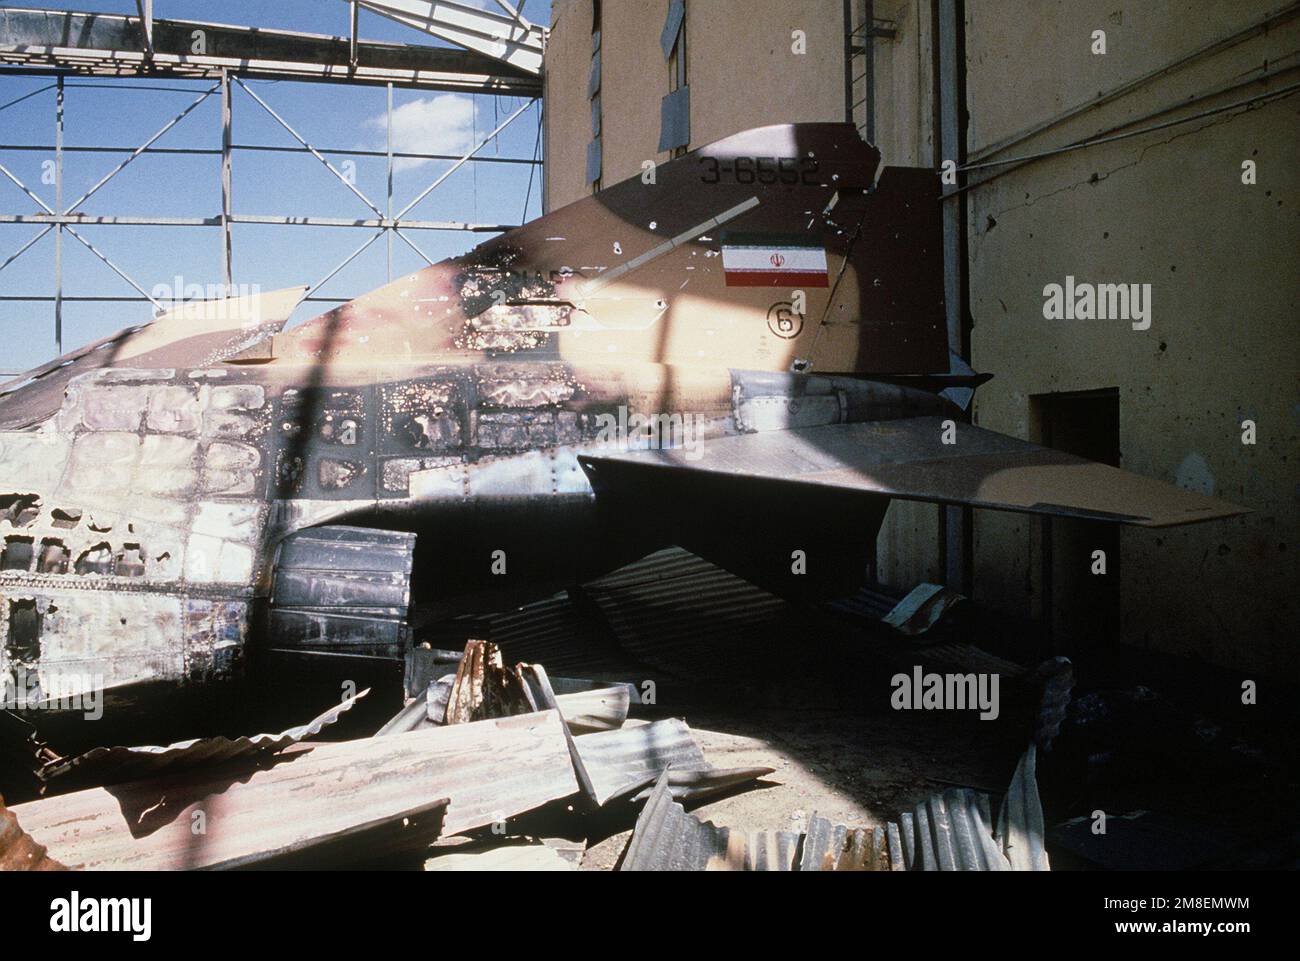 Vue rapprochée de la section de queue carbonée d'un F-4 Phantom II détruit par une attaque alliée au cours de l'opération tempête du désert. Objet opération/série : TEMPÊTE DANS LE DÉSERT pays : Irak (IRQ) Banque D'Images